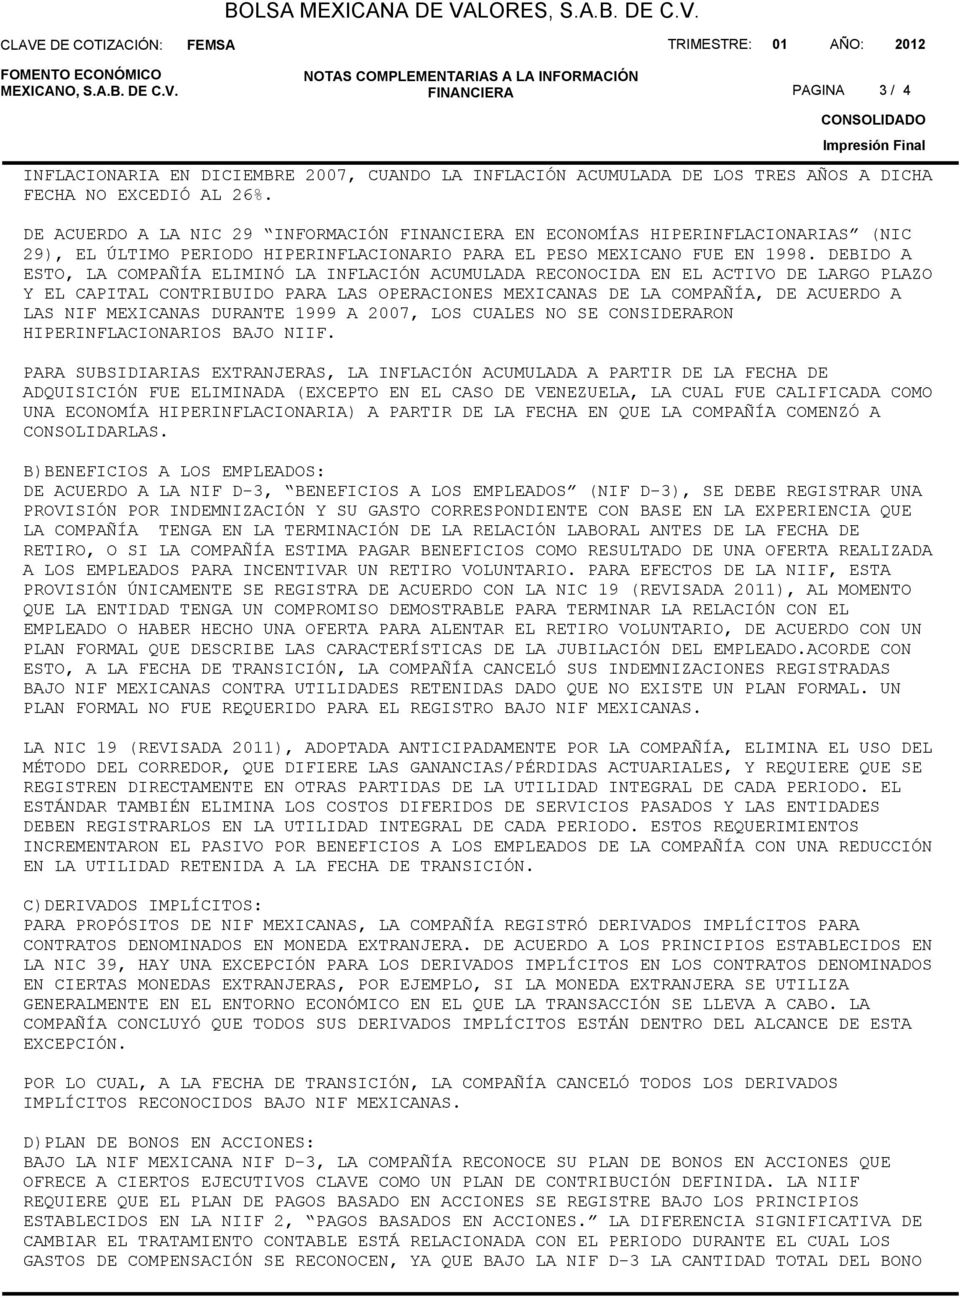 DE ACUERDO A LA NIC 29 INFORMACIÓN FINANCIERA EN ECONOMÍAS HIPERINFLACIONARIAS (NIC 29), EL ÚLTIMO PERIODO HIPERINFLACIONARIO PARA EL PESO MEXICANO FUE EN 1998.